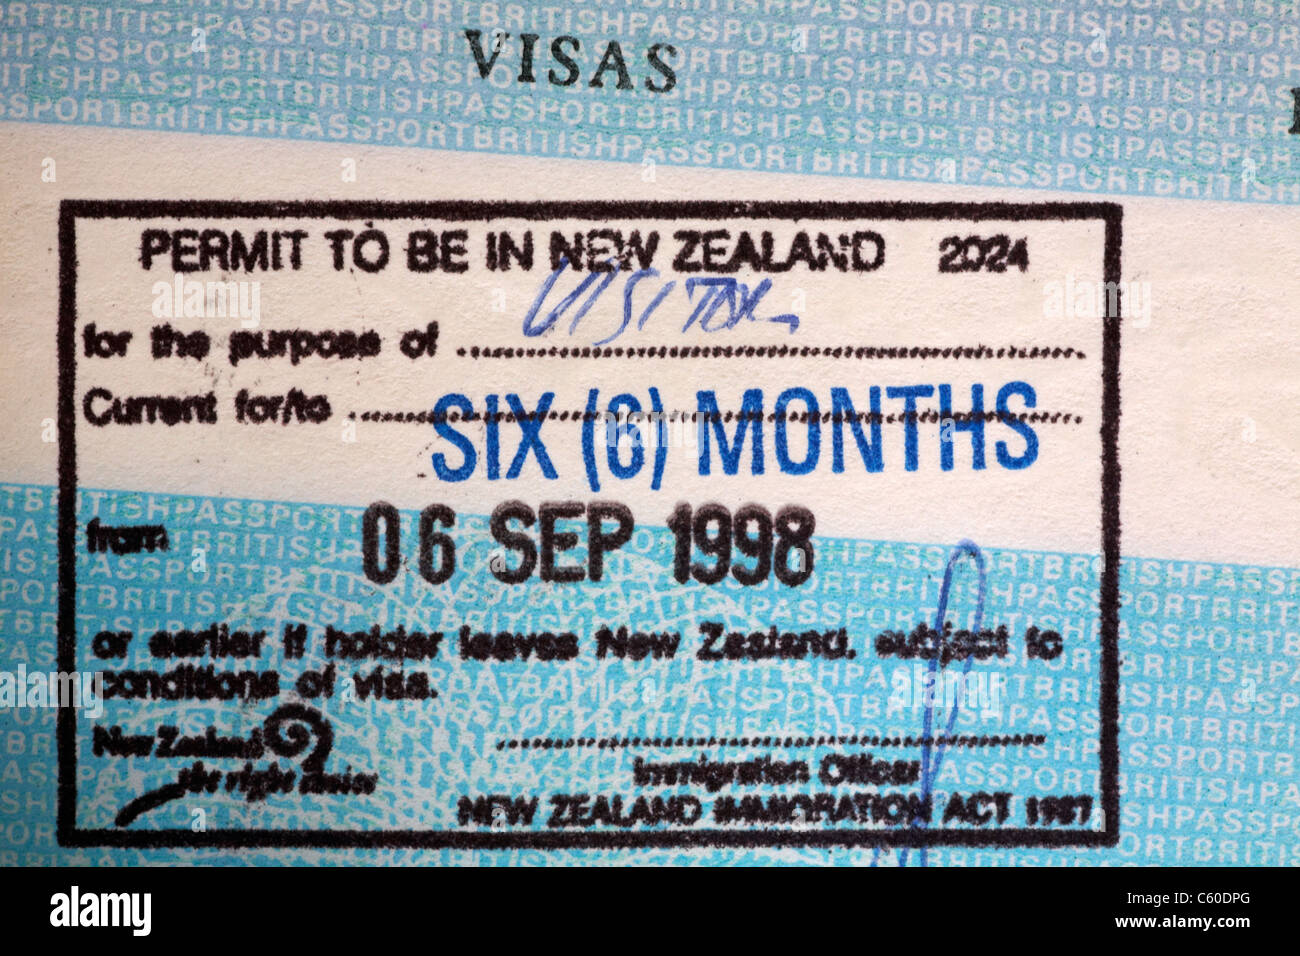 La Nouvelle-Zélande en tampon de visa passeport britannique Photo Stock -  Alamy